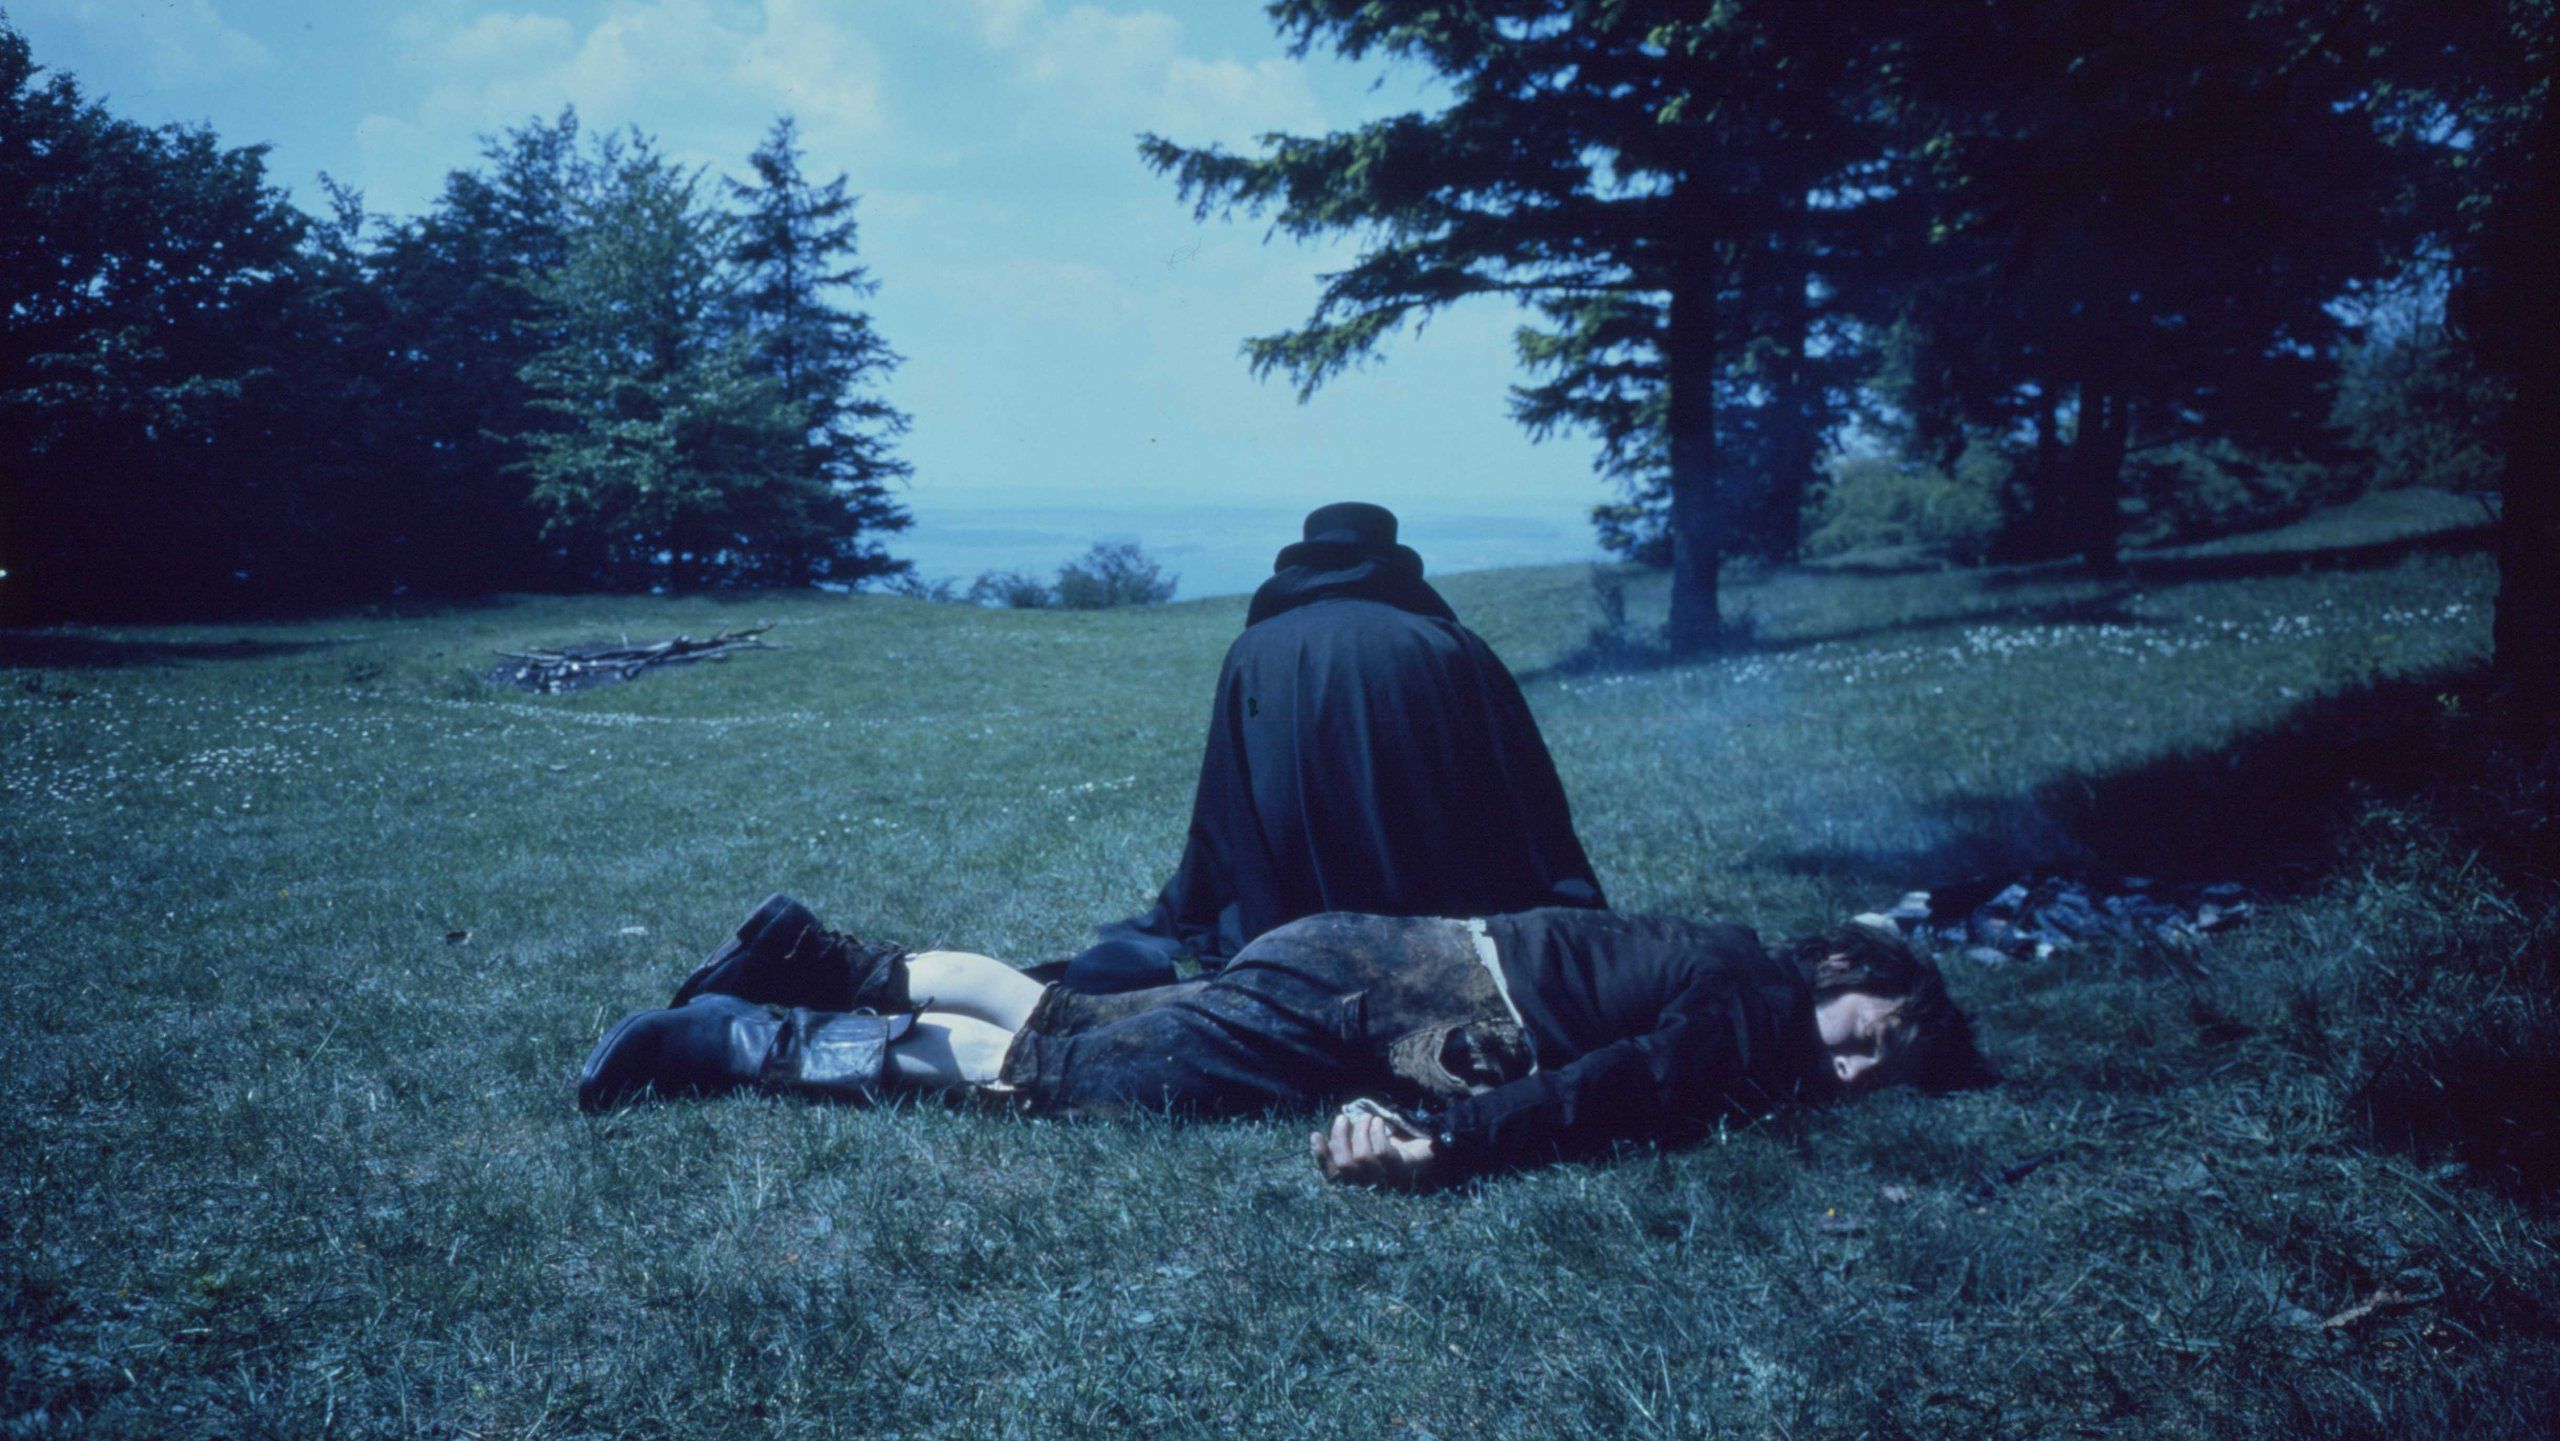 Ein toter Mann liegt auf der Wiese. Hinter ihm hockt ein Mensch in dunkle Kleidung gehüllt, man sieht nur seinen Rücken.